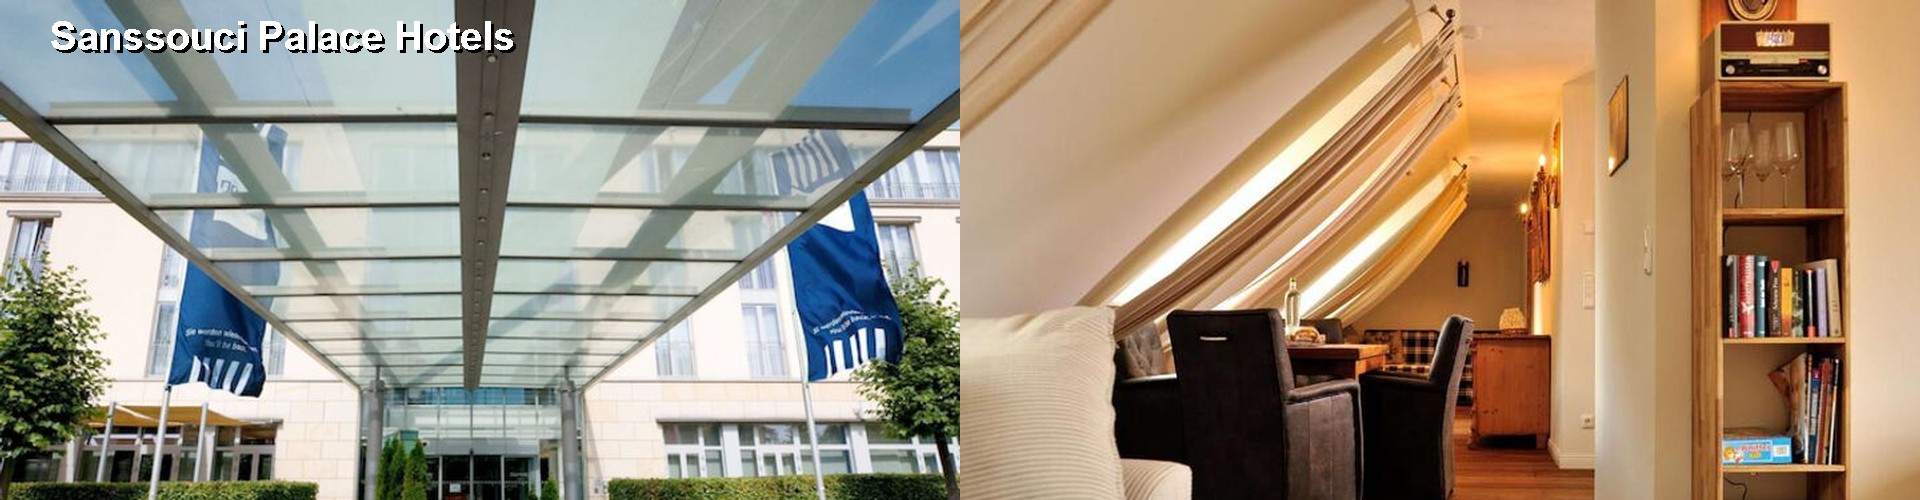 5 Best Hotels near Sanssouci Palace